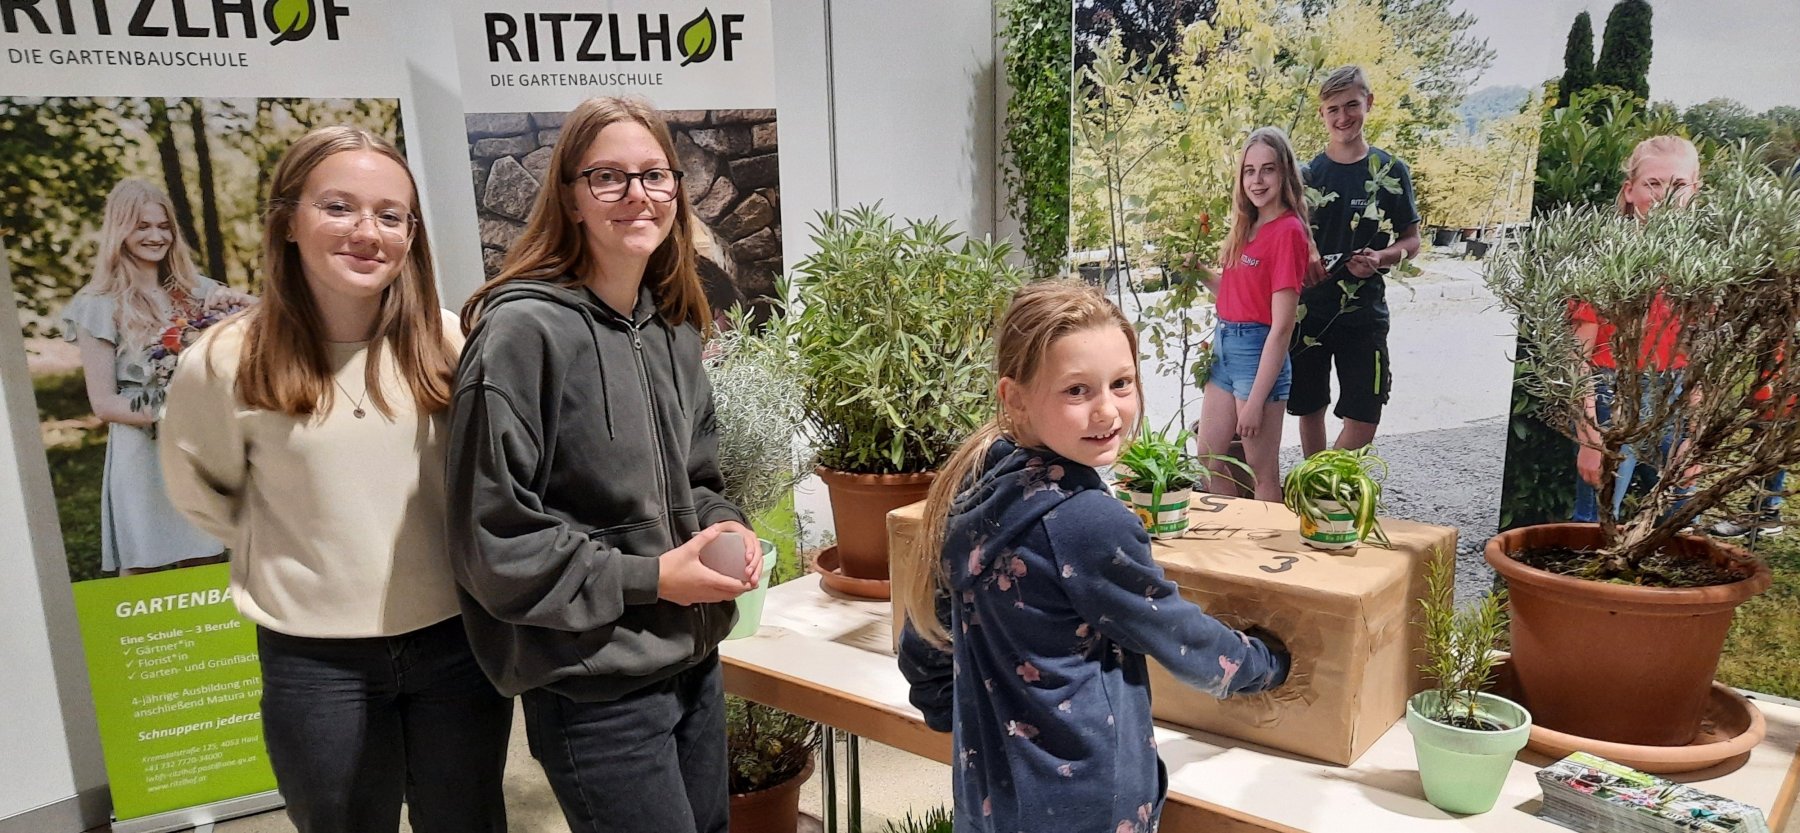 Zwei Schülerinnen der Gartenbaufachschule Ritzlhof betreuen eine Interessentin an unserer Ausbildung am Messestand in Wels